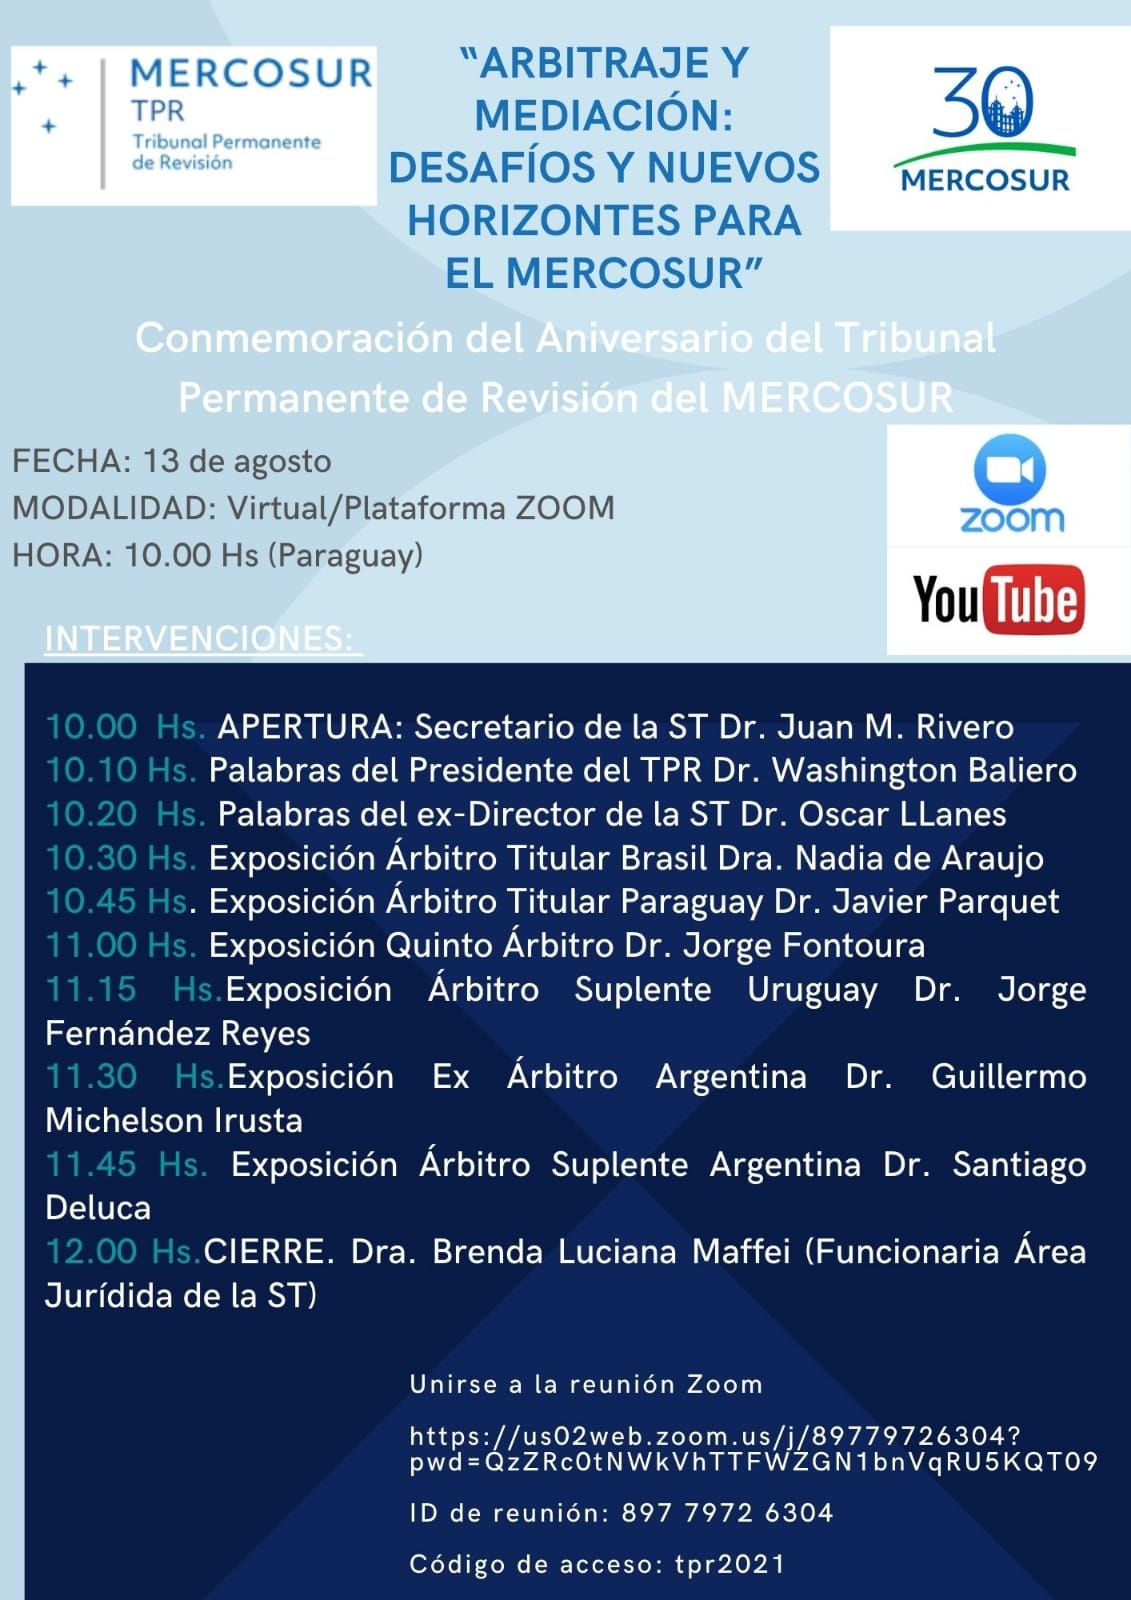 Arbitraje y mediación: «Desafíos y nuevos horizontes para el Mercosur»